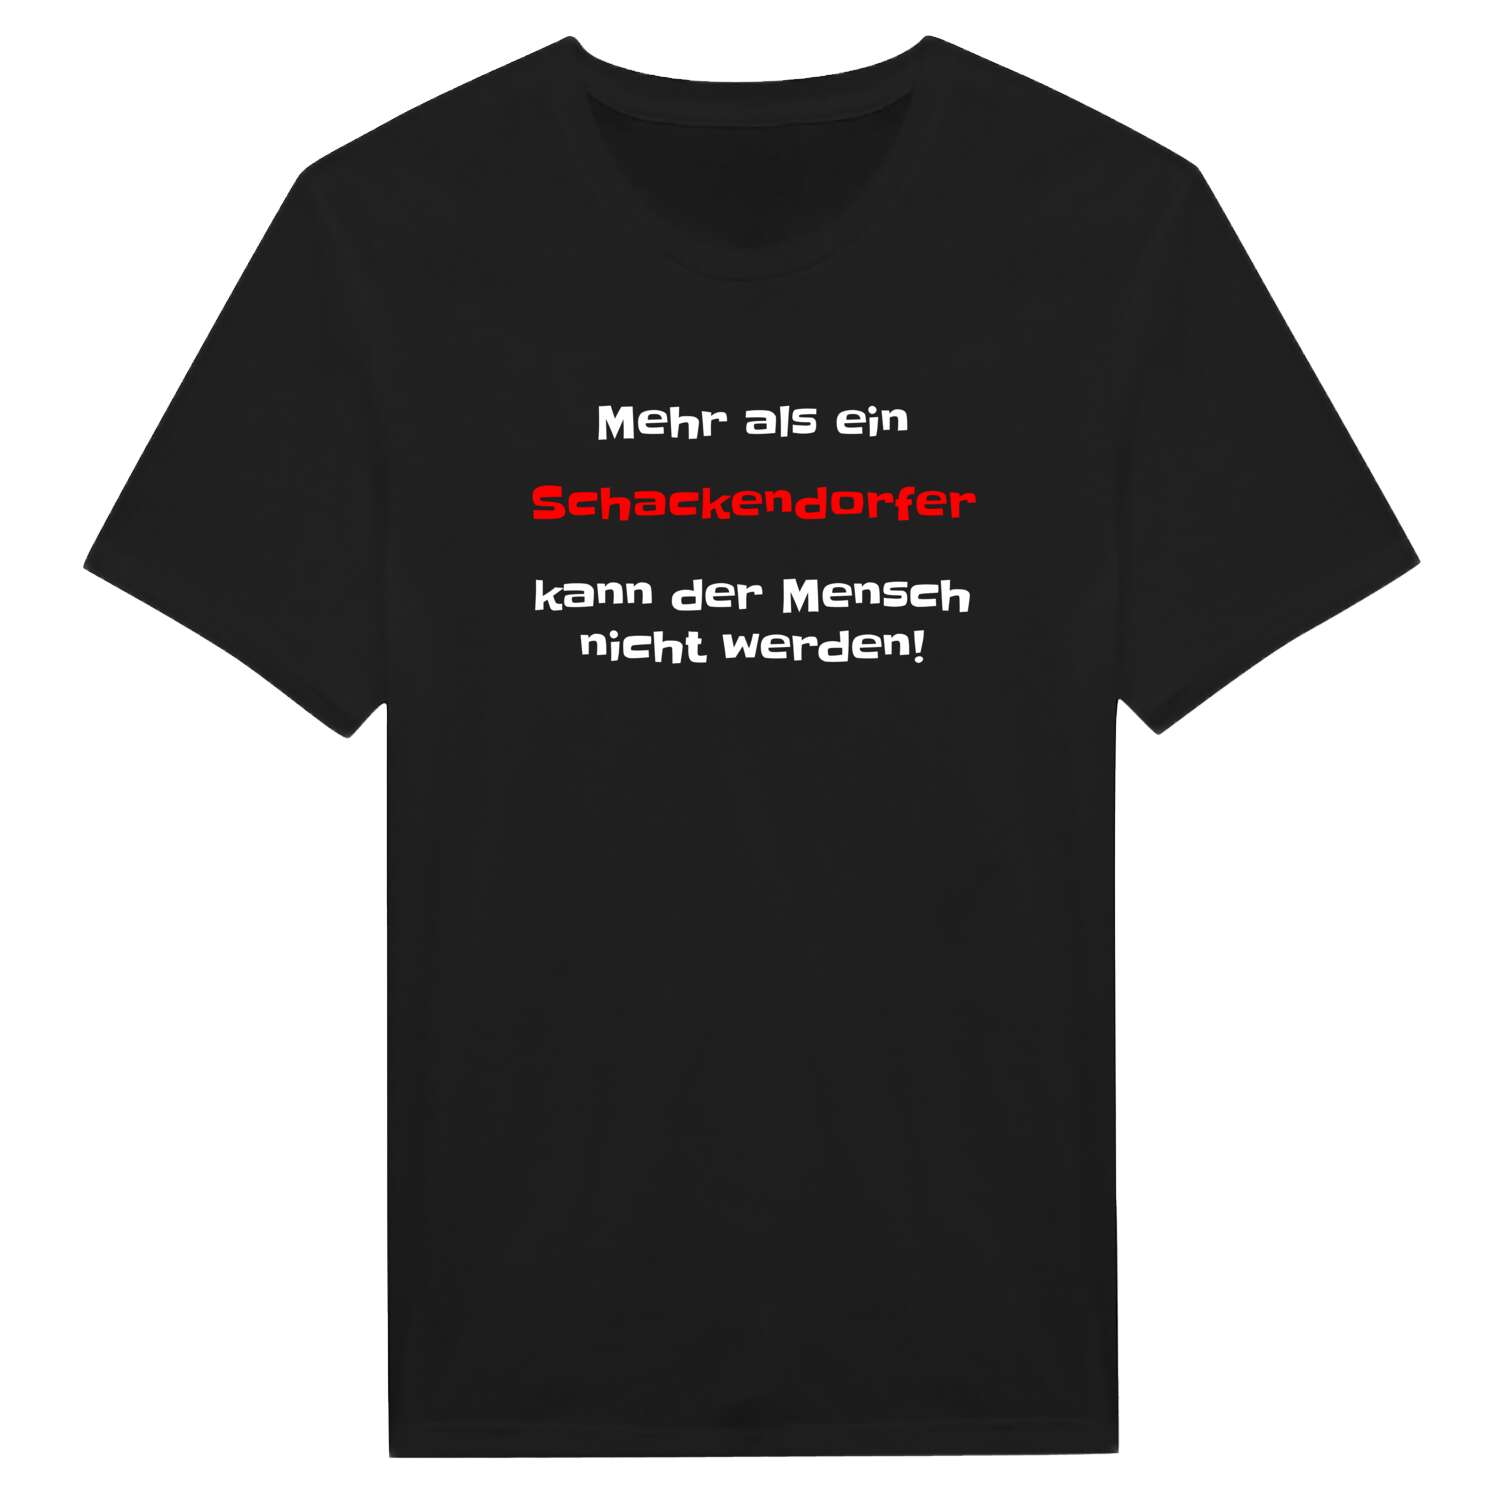 Schackendorf T-Shirt »Mehr als ein«